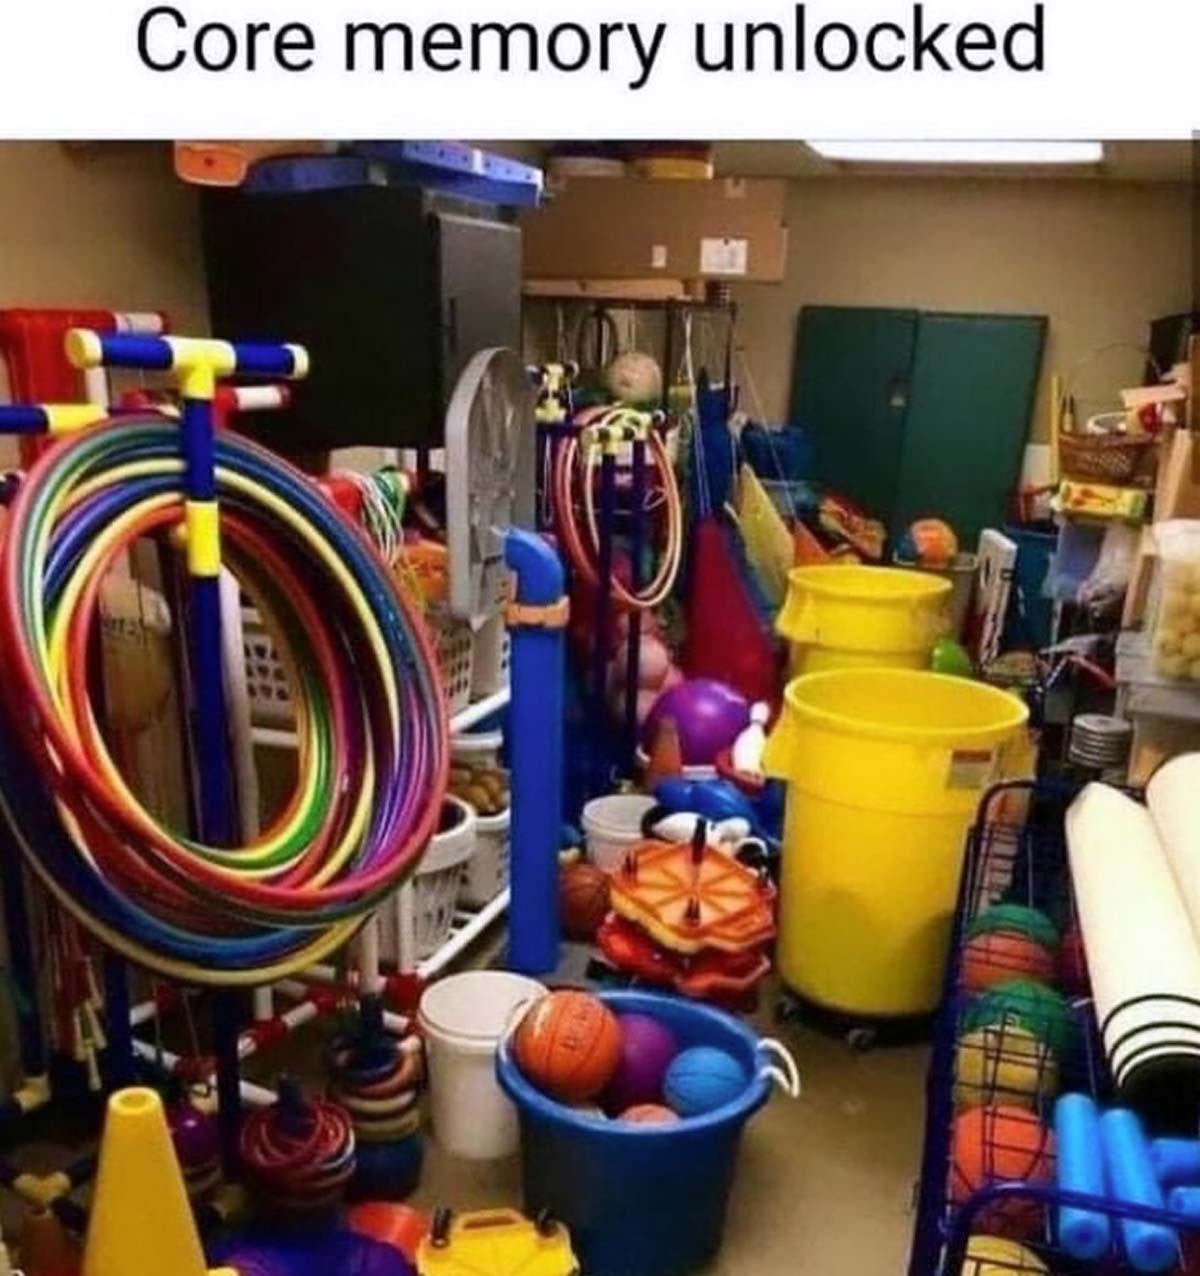 90s school nostalgia - Core memory unlocked